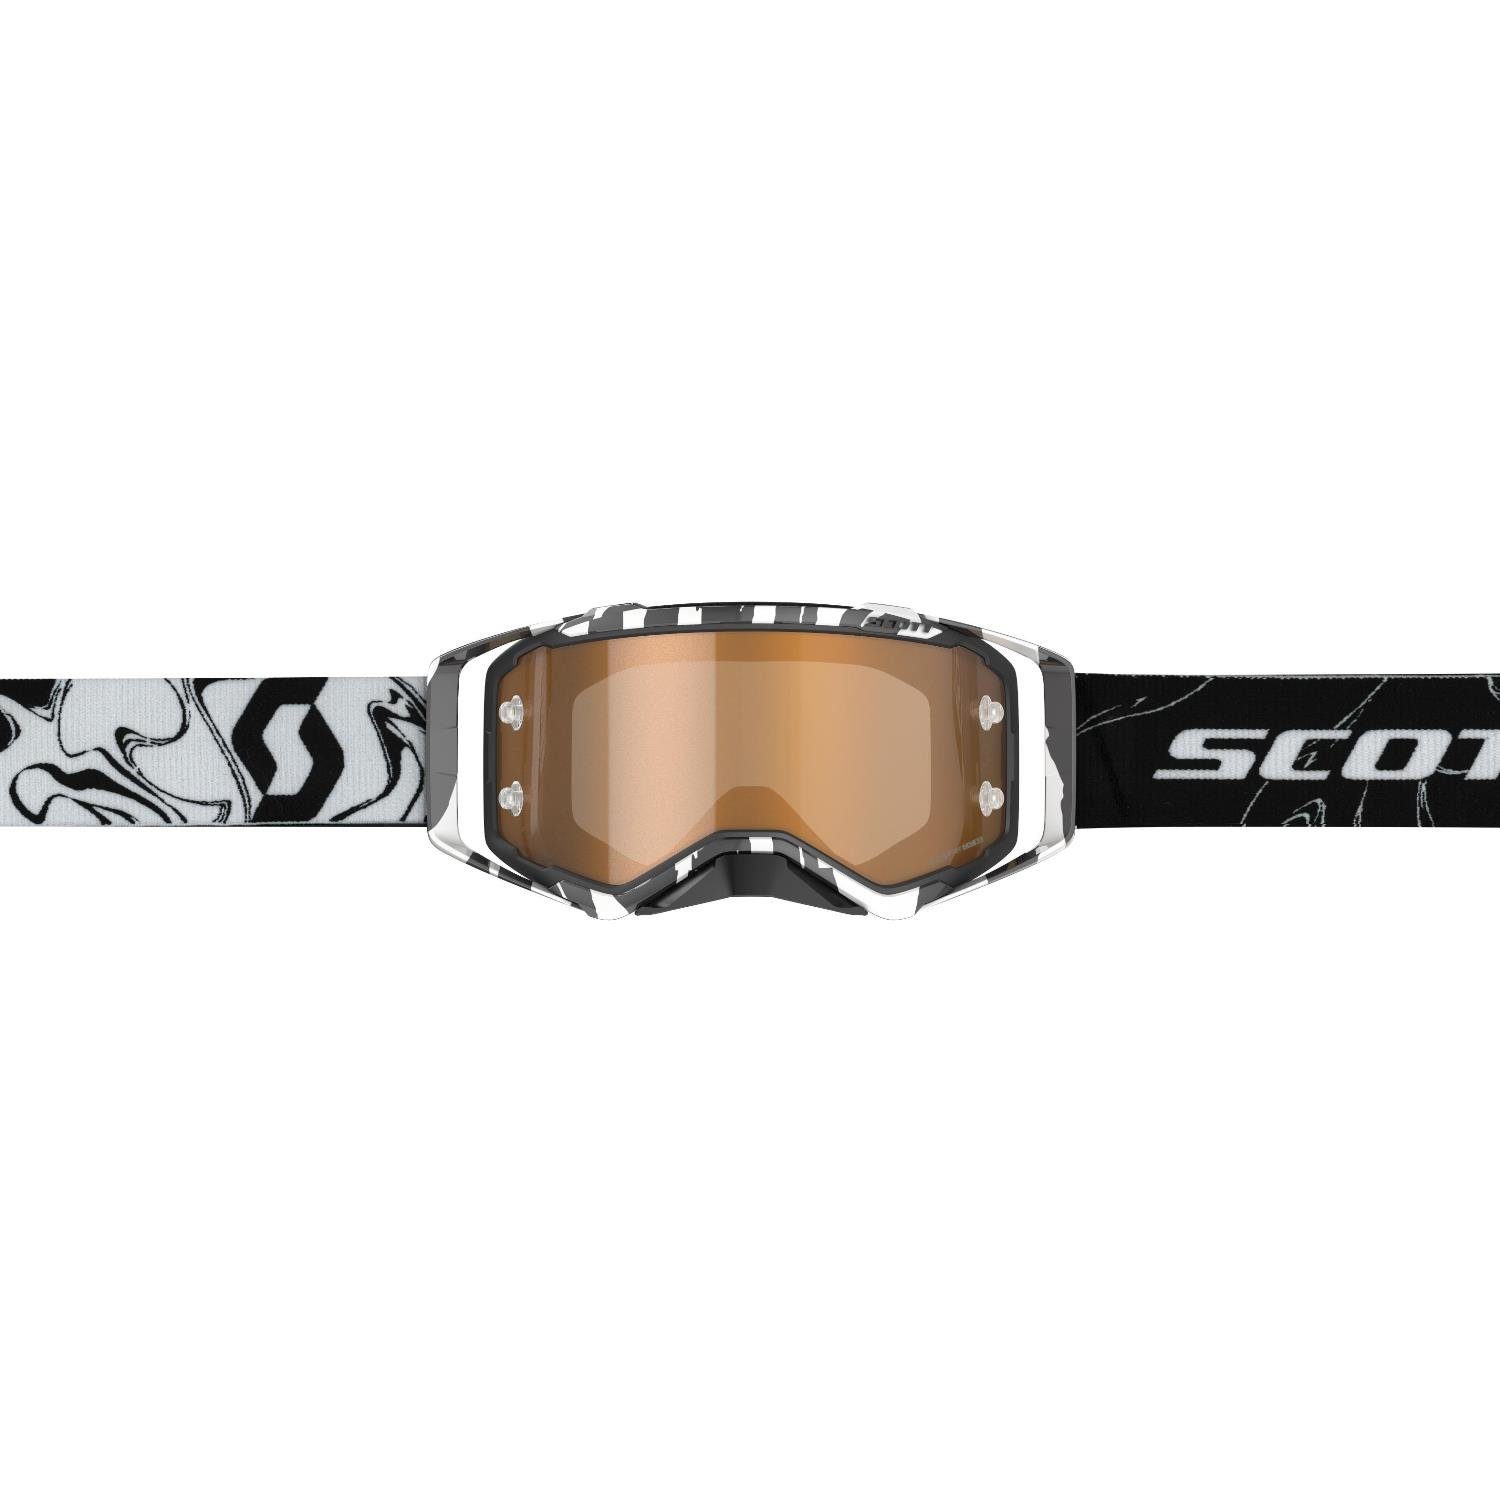 Brille MX Prospect Sportbrille Scott marmoriert Goggle schwarz/weiß Scott Amplifier Motocross Unisex